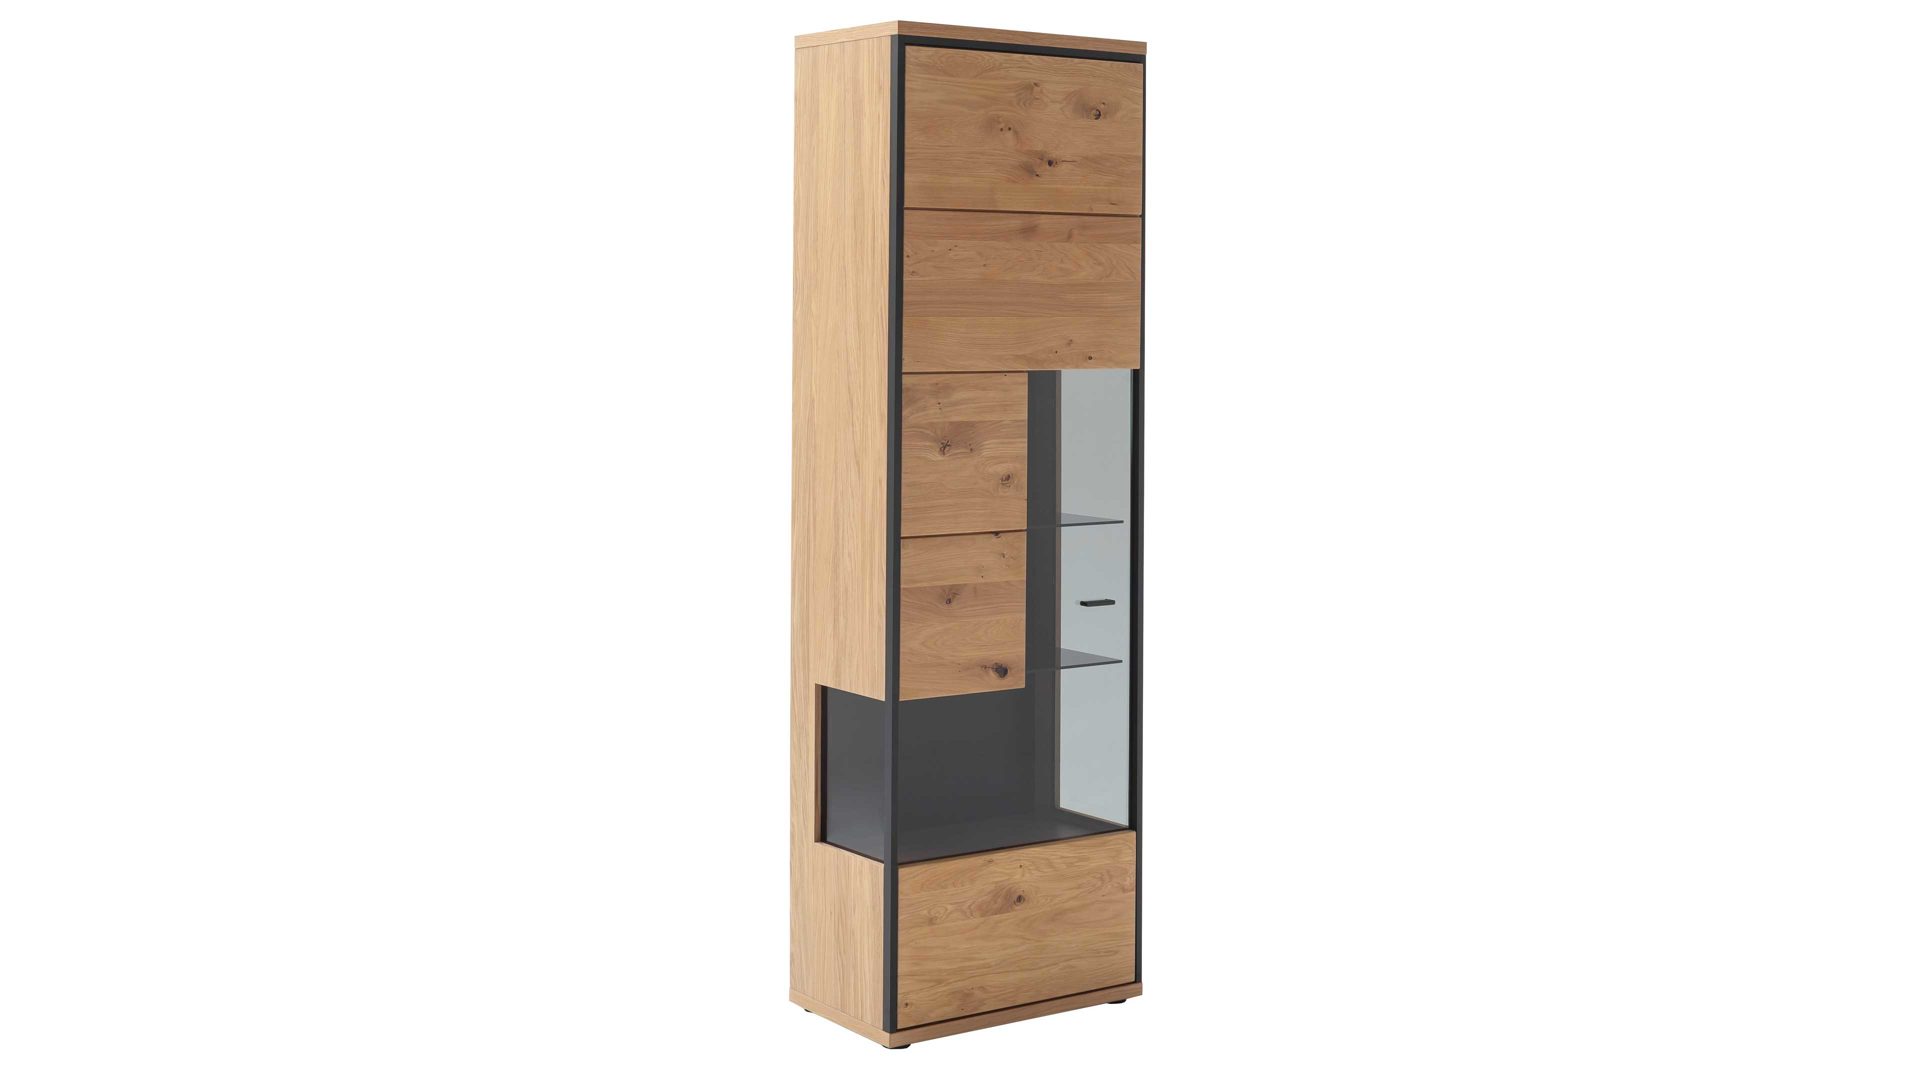 Vitrine Mca furniture aus Holz in Holzfarben Wohnprogramm Bari - Vitrine Asteiche Bianco – eine Tür, Breite ca. 63 cm